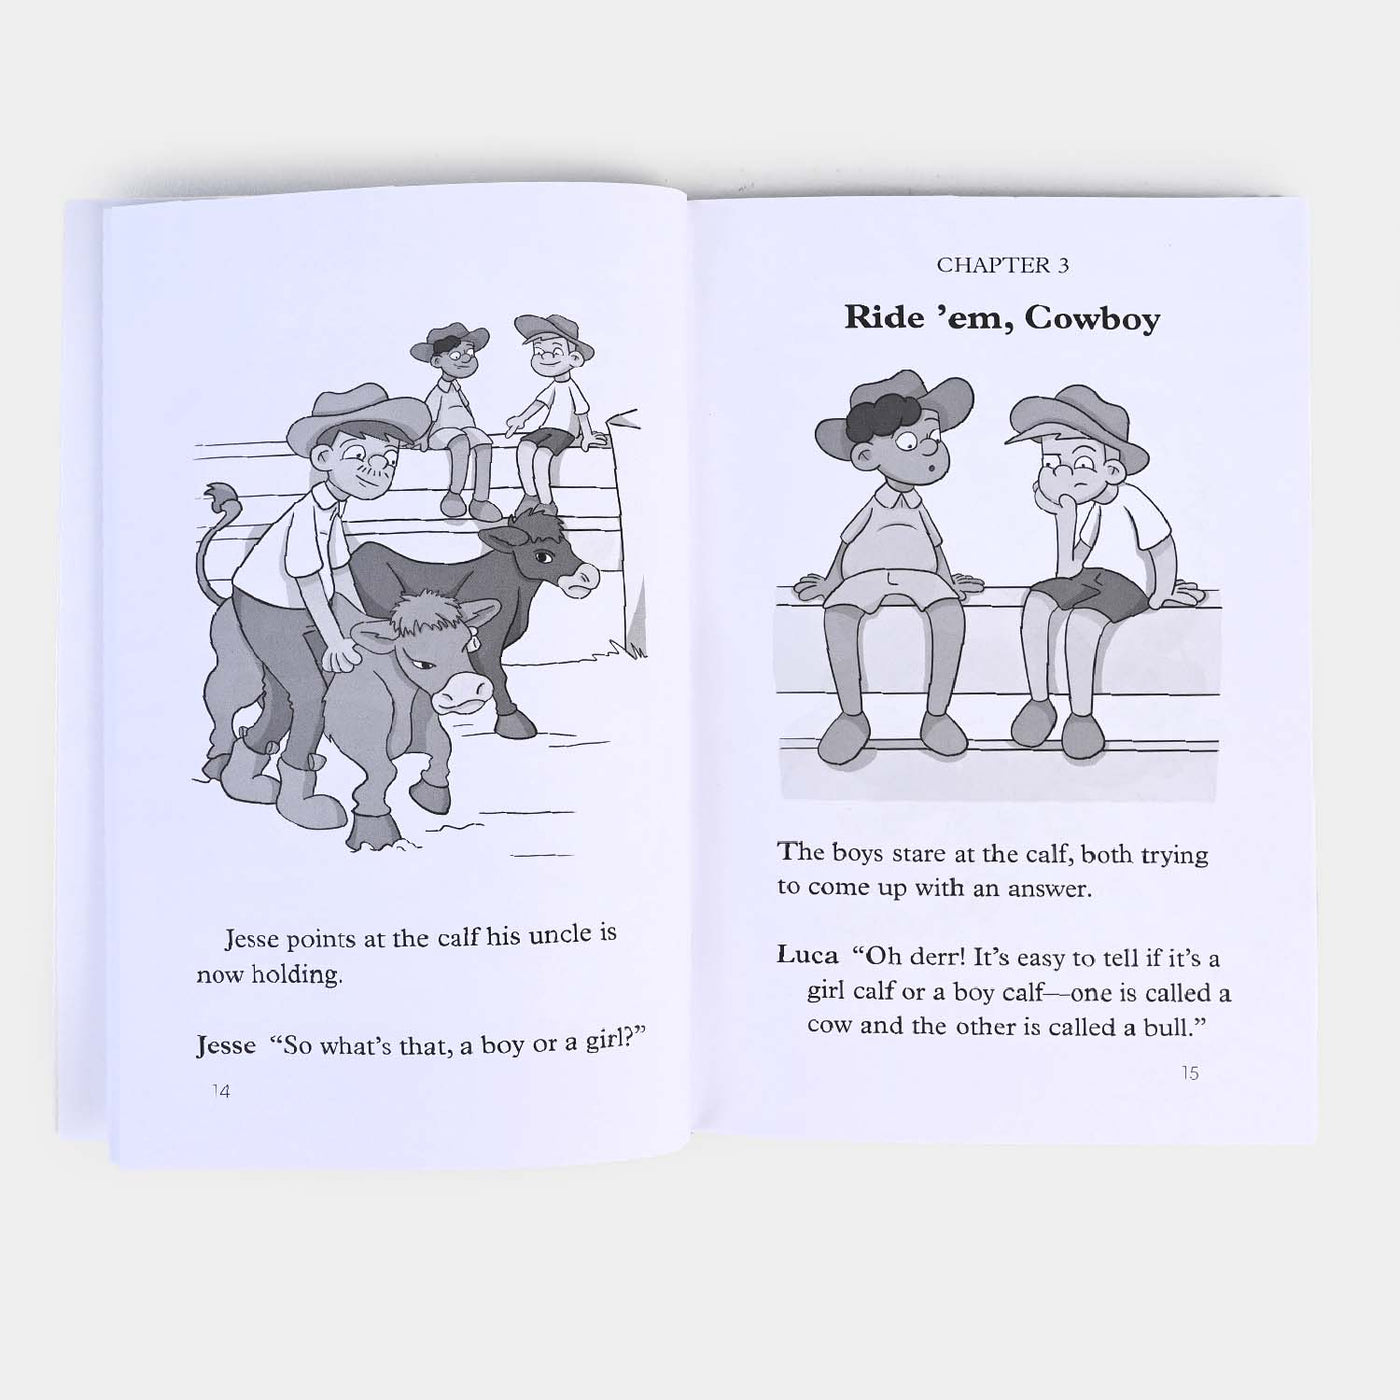 Kids Rules Cowboy Capers Novel